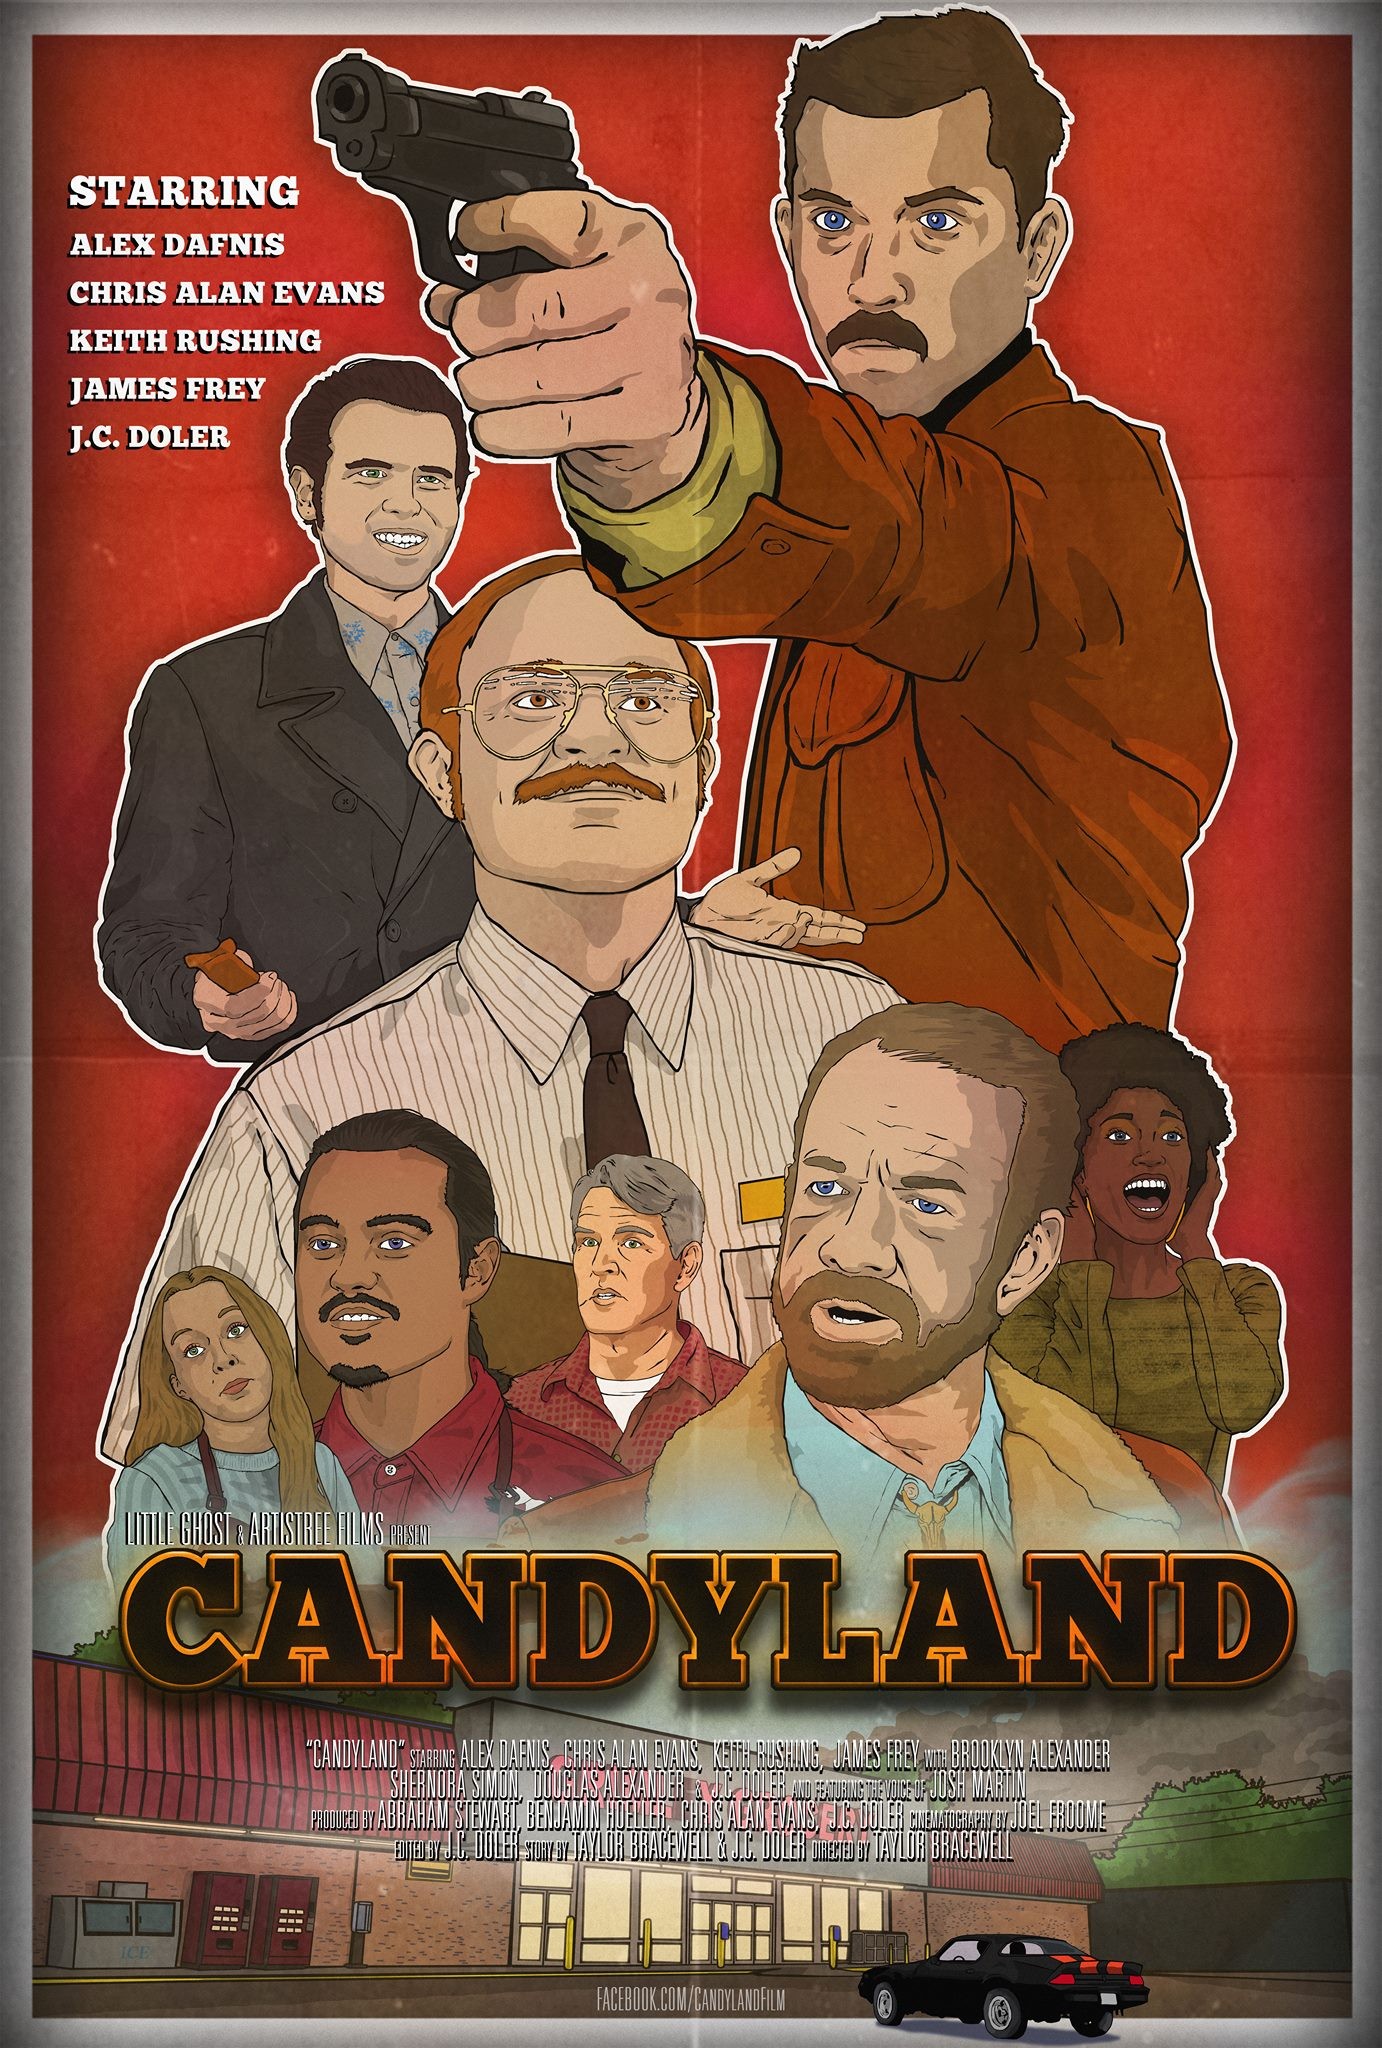 Mega Sized Movie Poster Image for Candyland